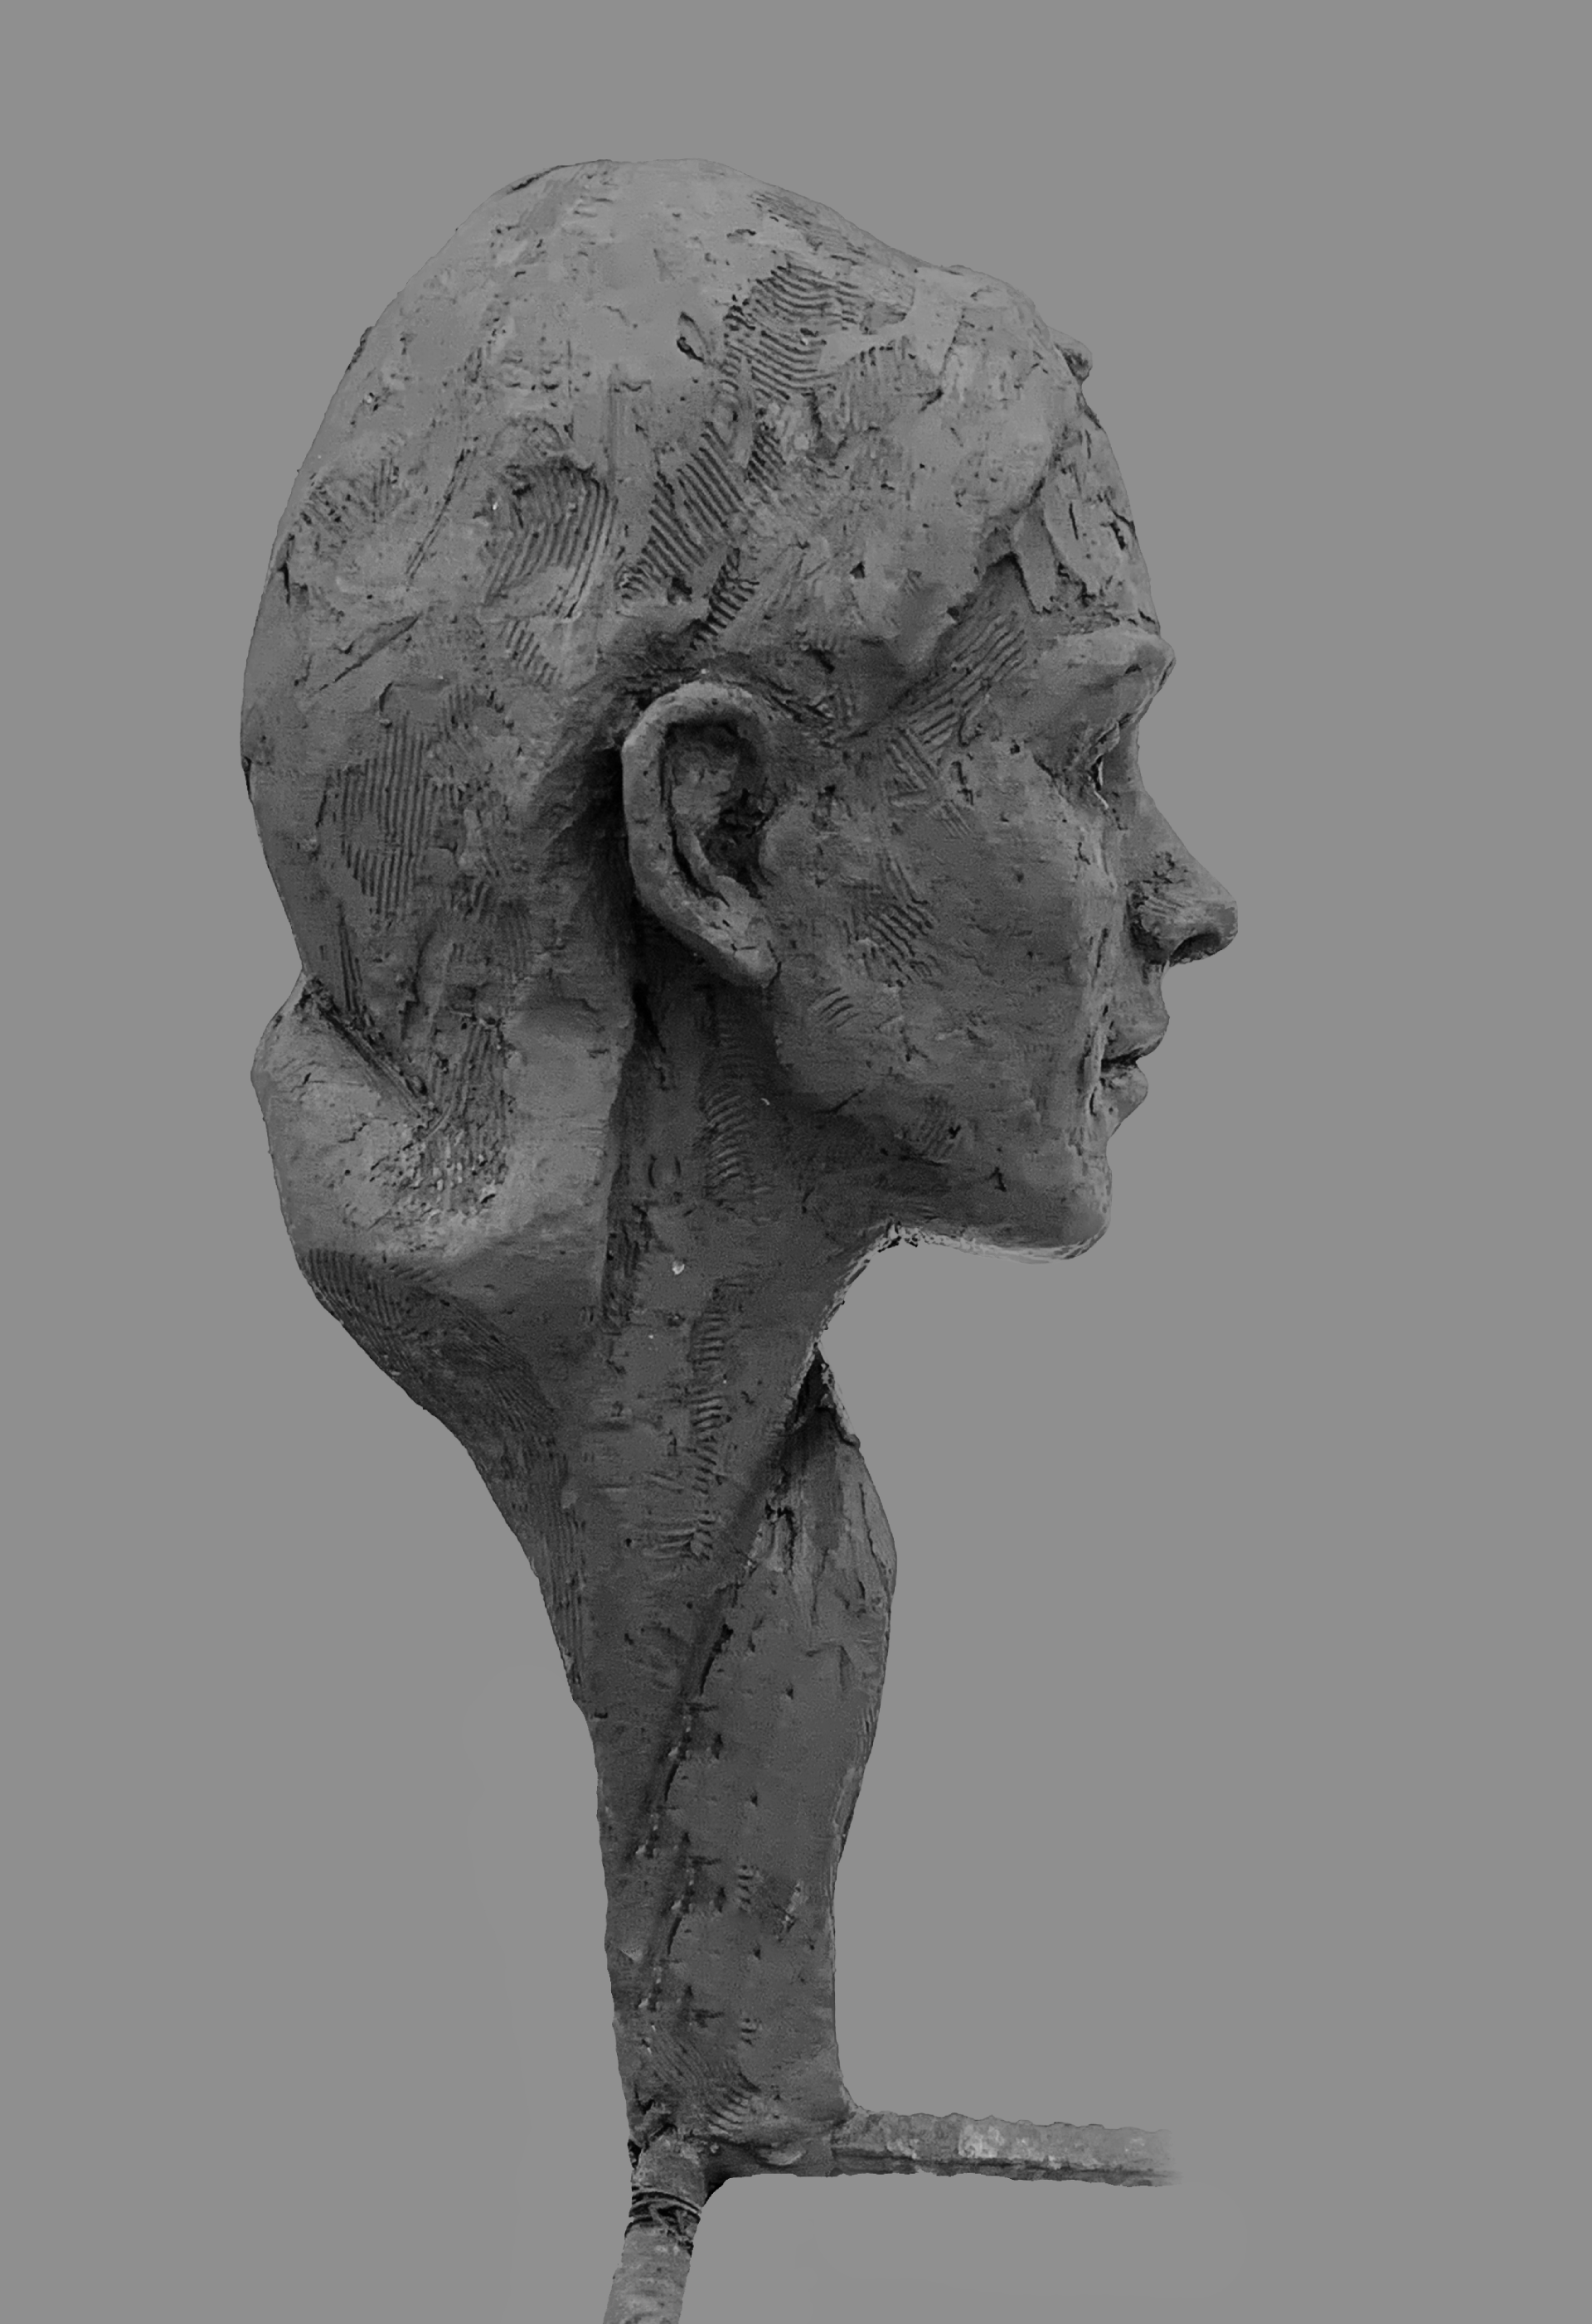 :zdjęcie przedstawia kobiecy portret rzeźbiarski, z rozpuszczonymi włosami, powierzchnia rzeźby pokryta delikatną strukturą, ujęcie profilowe